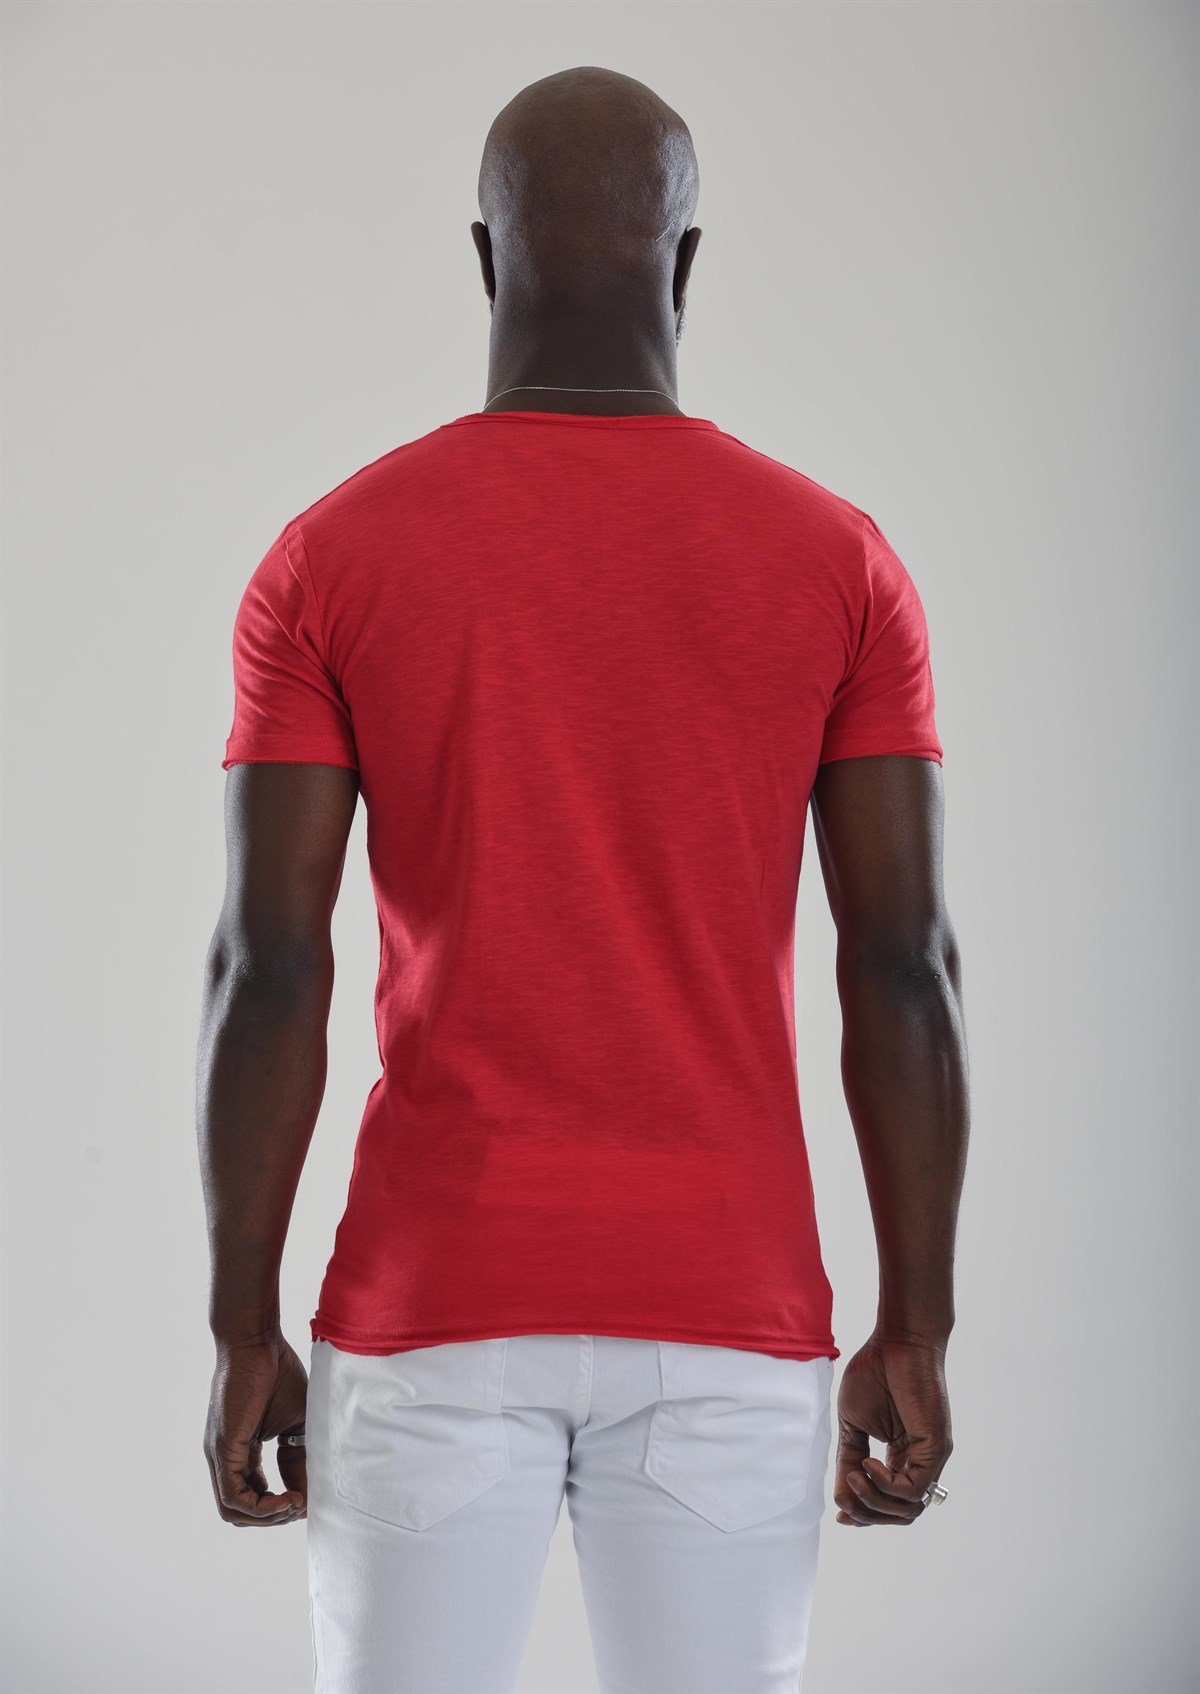 Kırmızı V Yaka Erkek Tişört Modeli